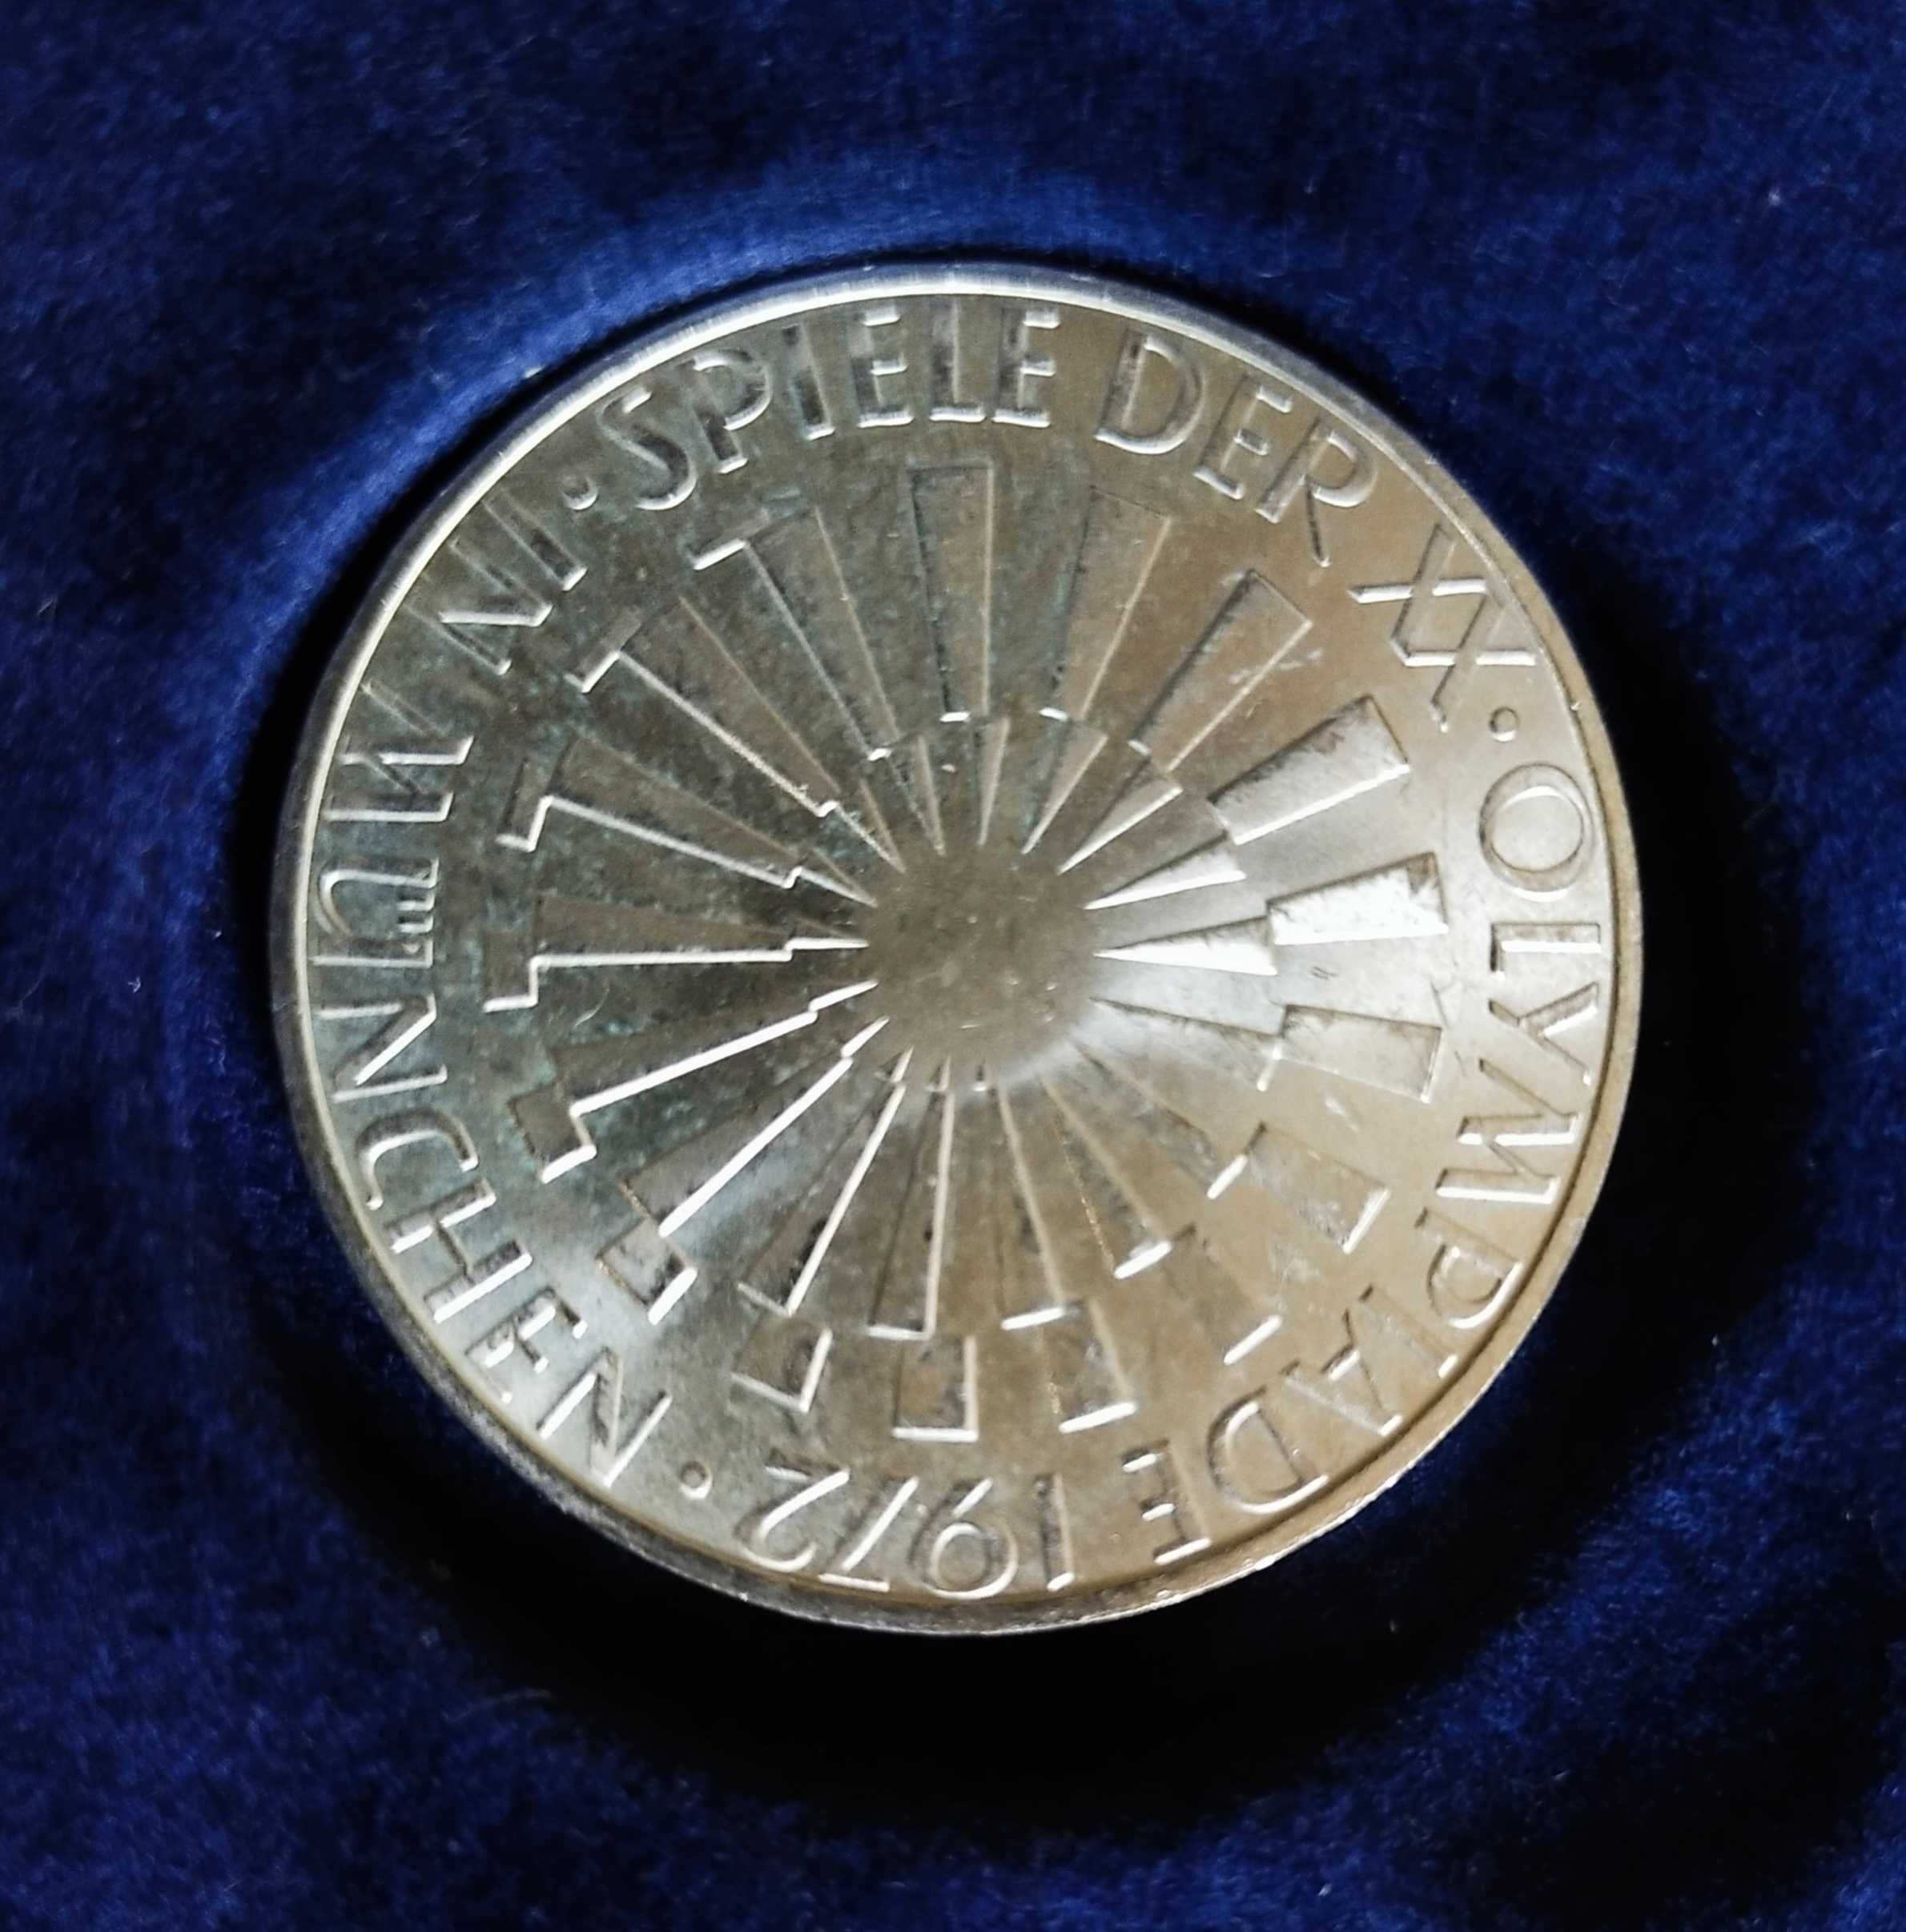 43 sztuk srebrnych monet 10 marek w tym 4 odmiany mennicy